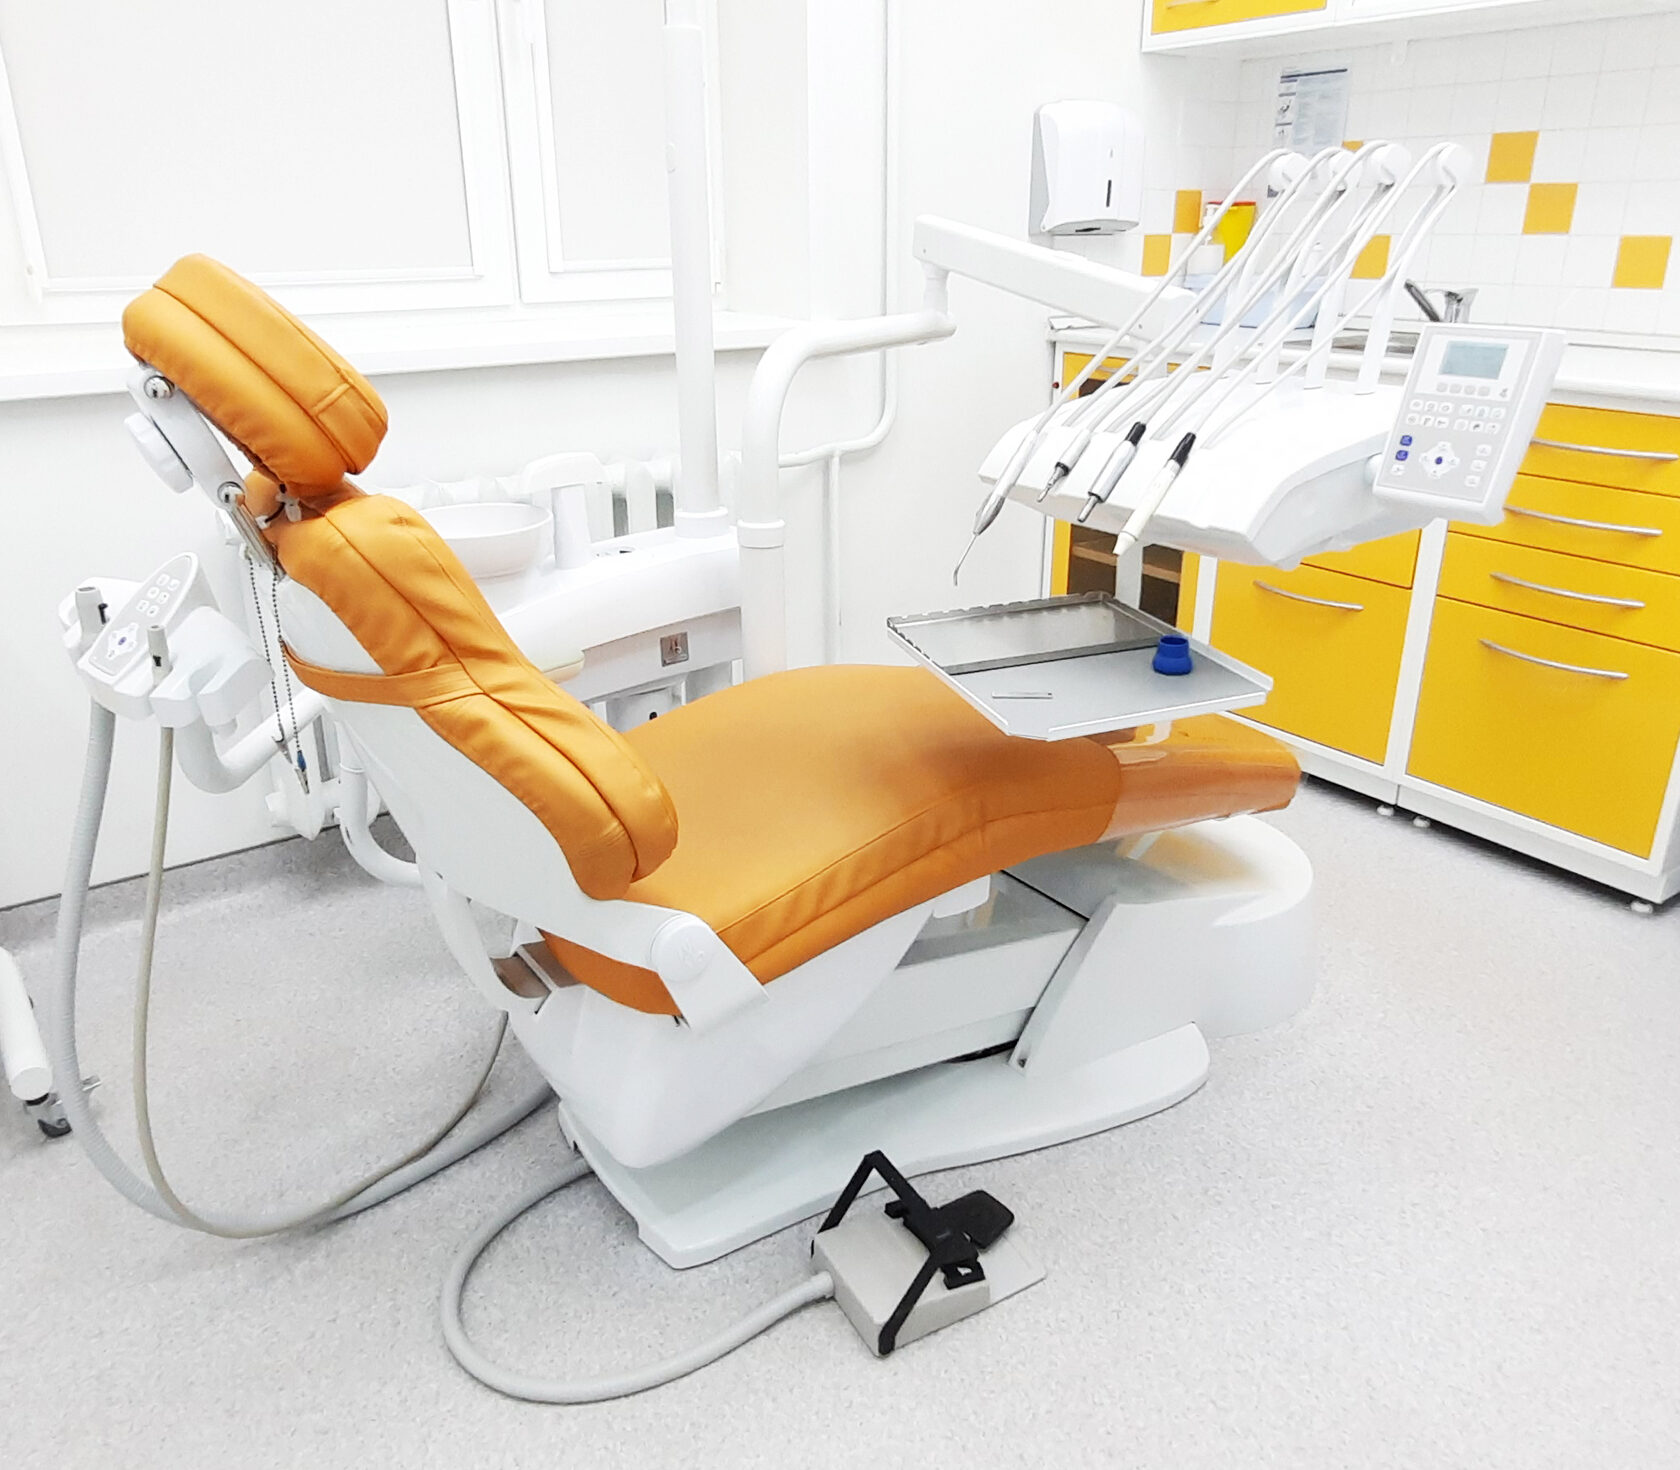 10 000 часов у стоматологического кресла